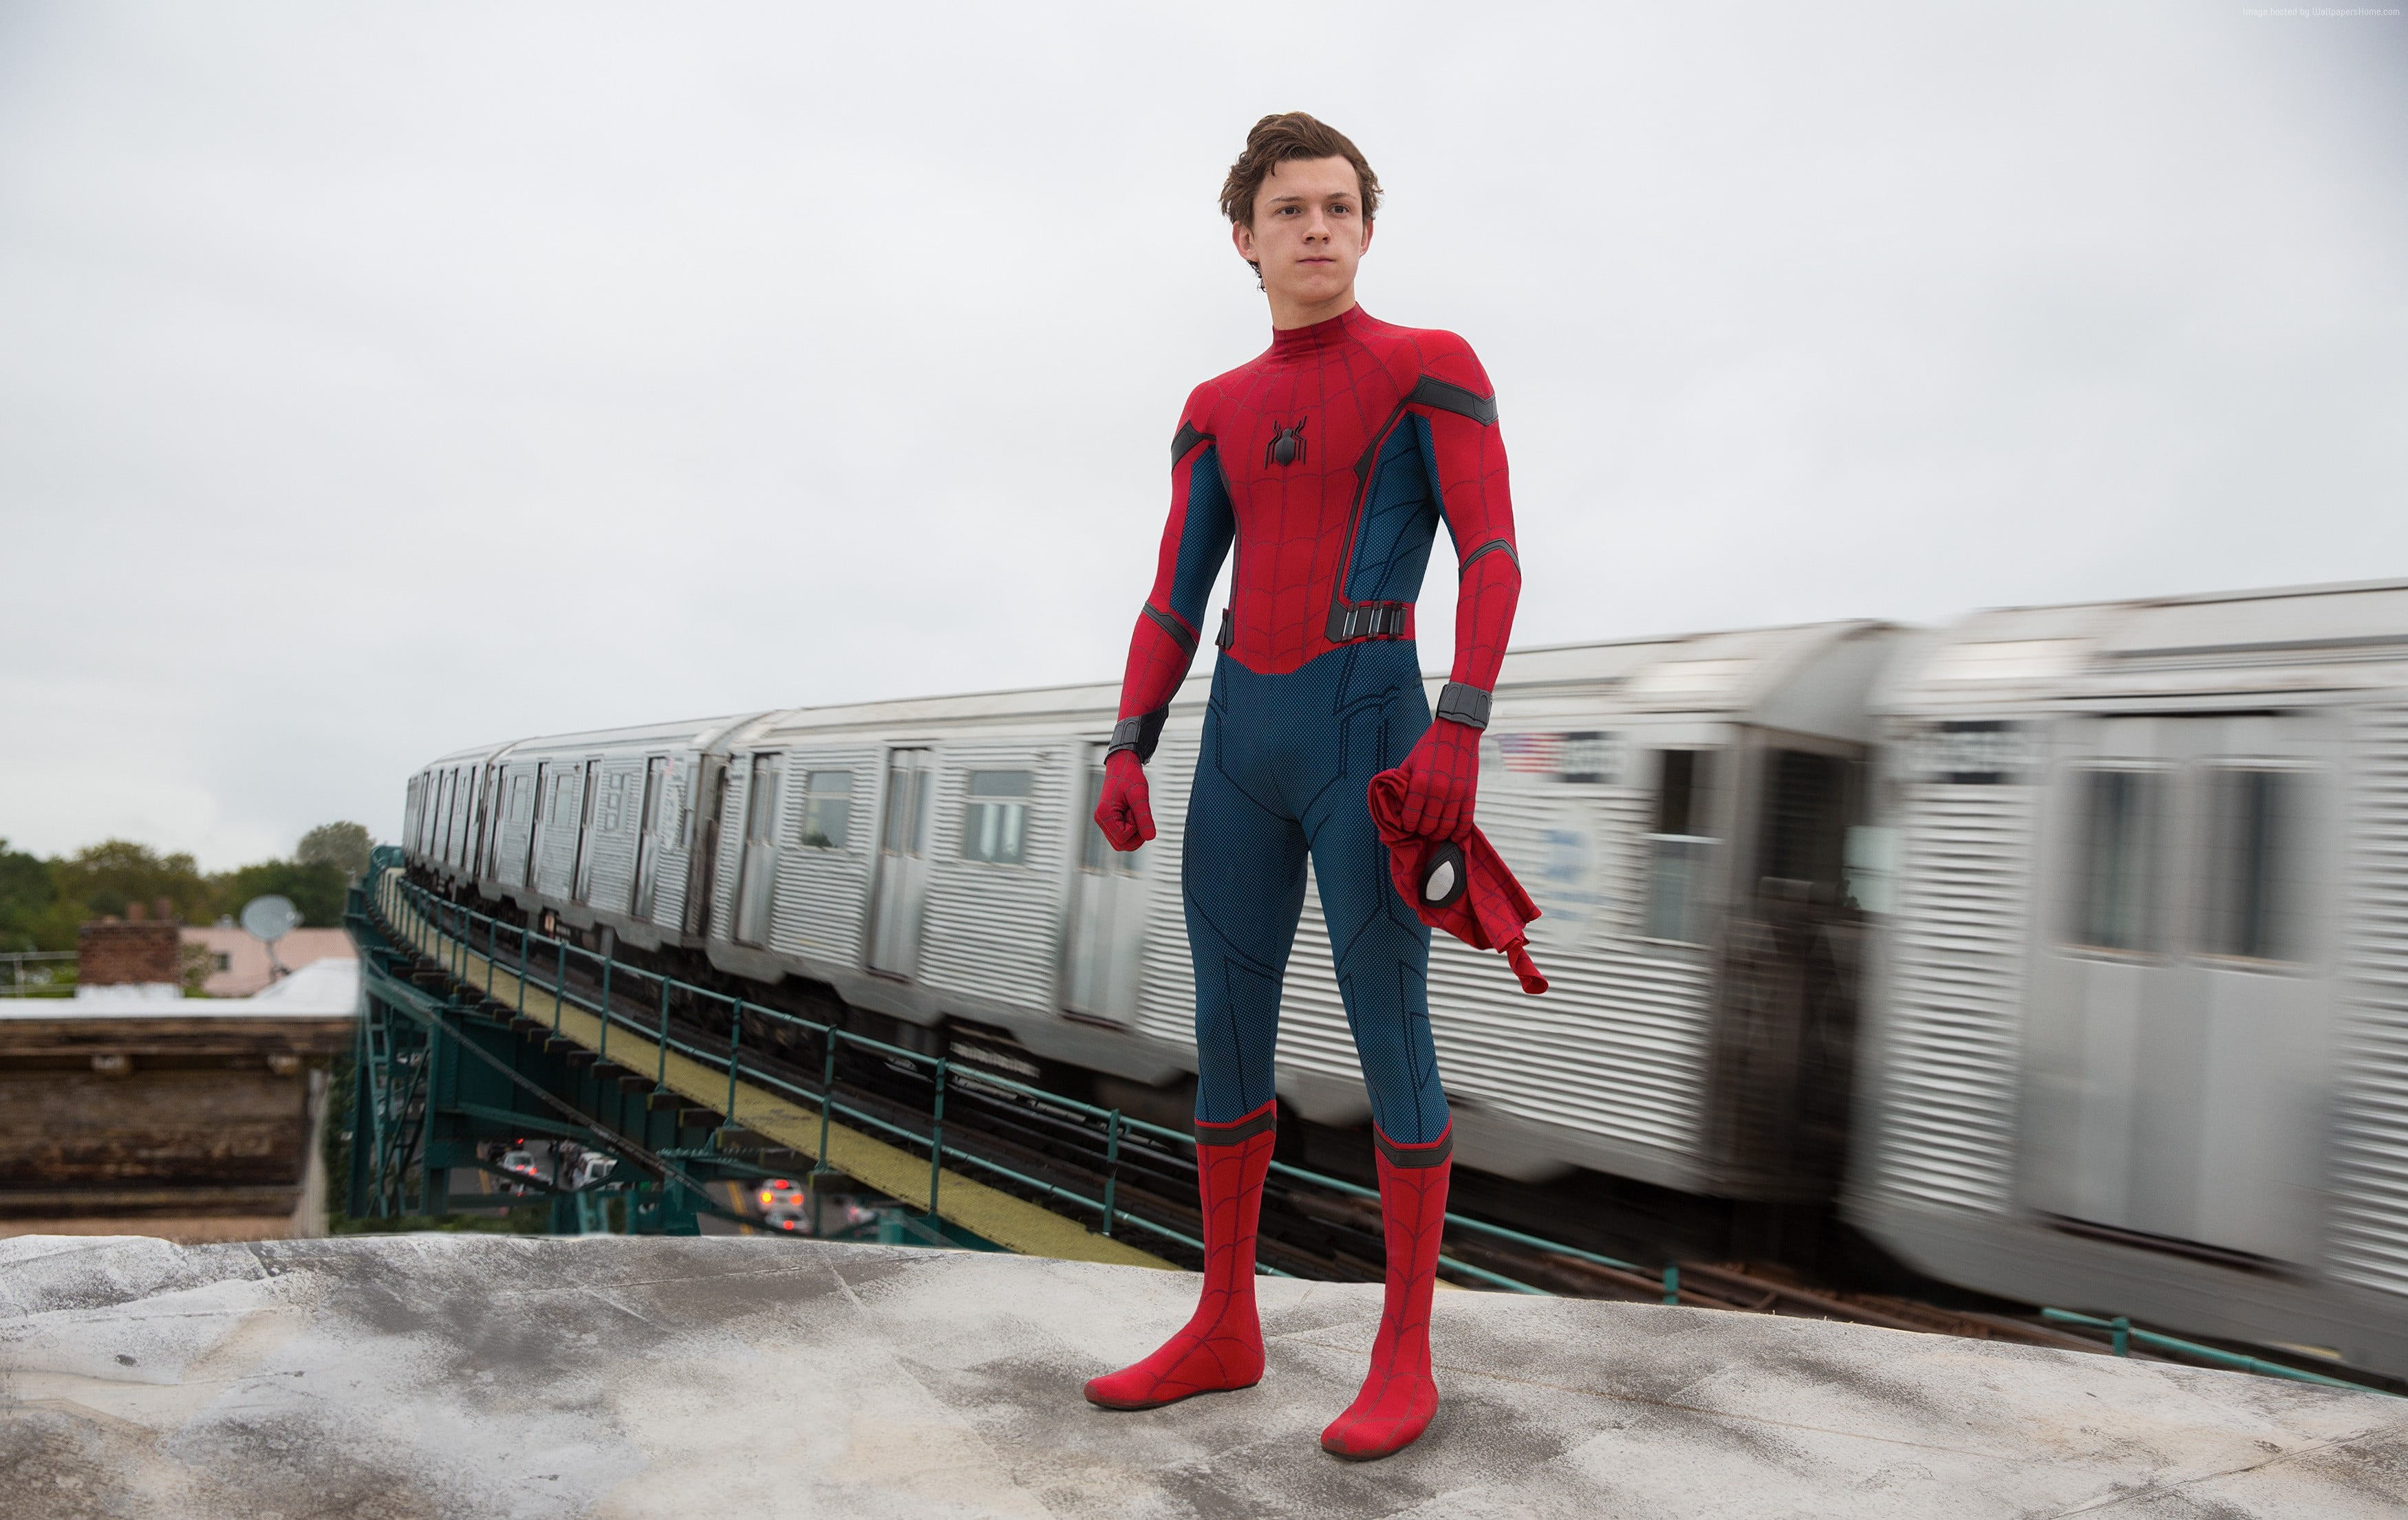 Spider-Man standing near train during daytime